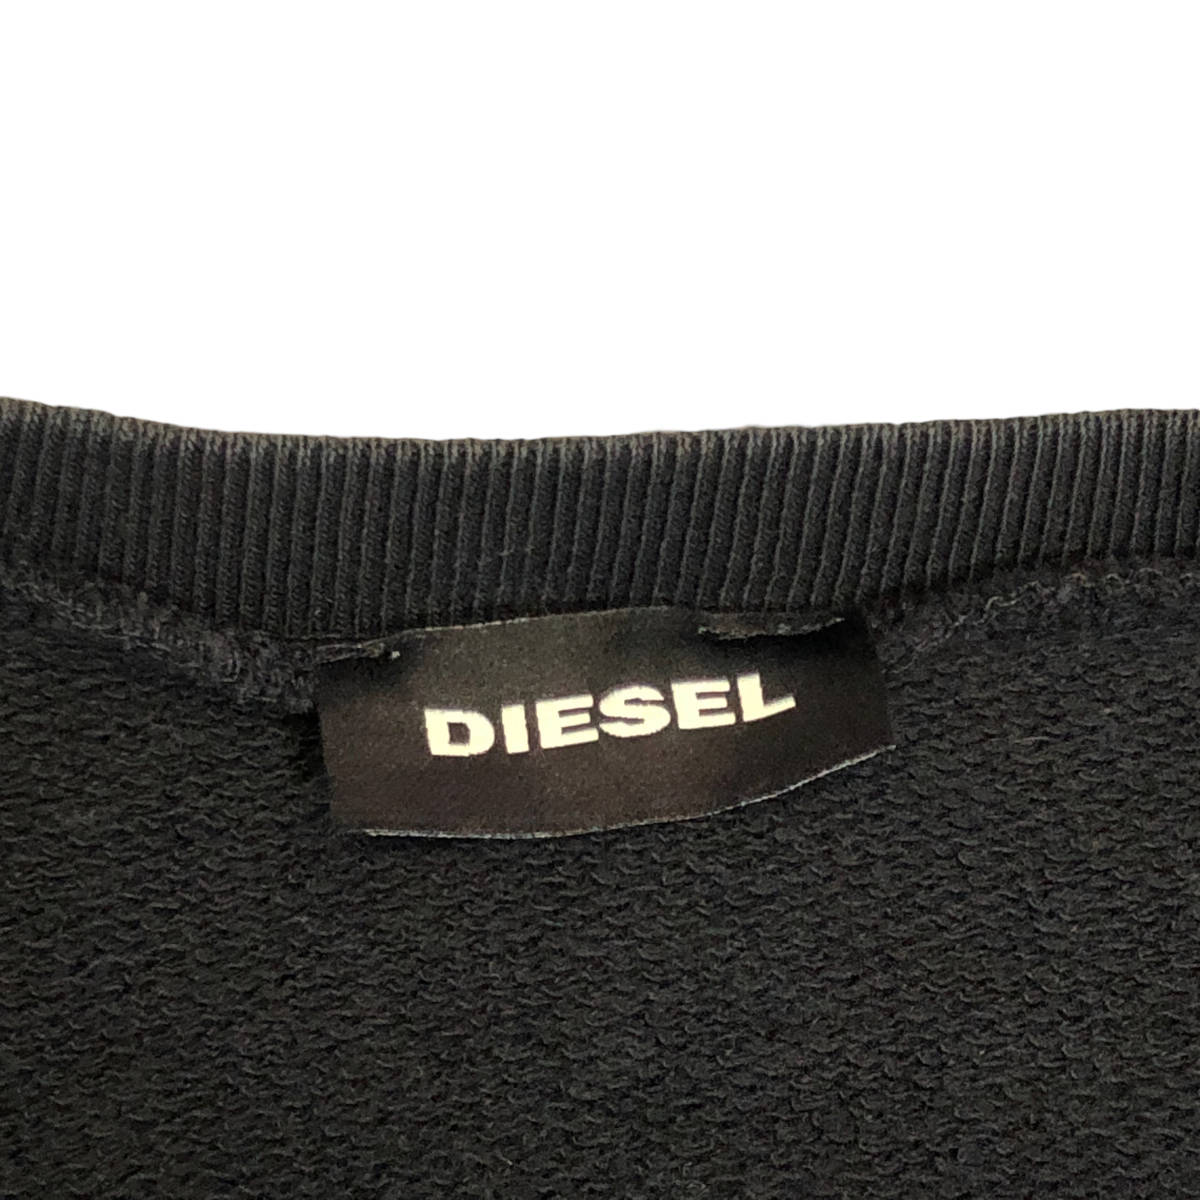 DIESEL diesel Kids sweat sweatshirt Logo Vintage processing 14 black A30